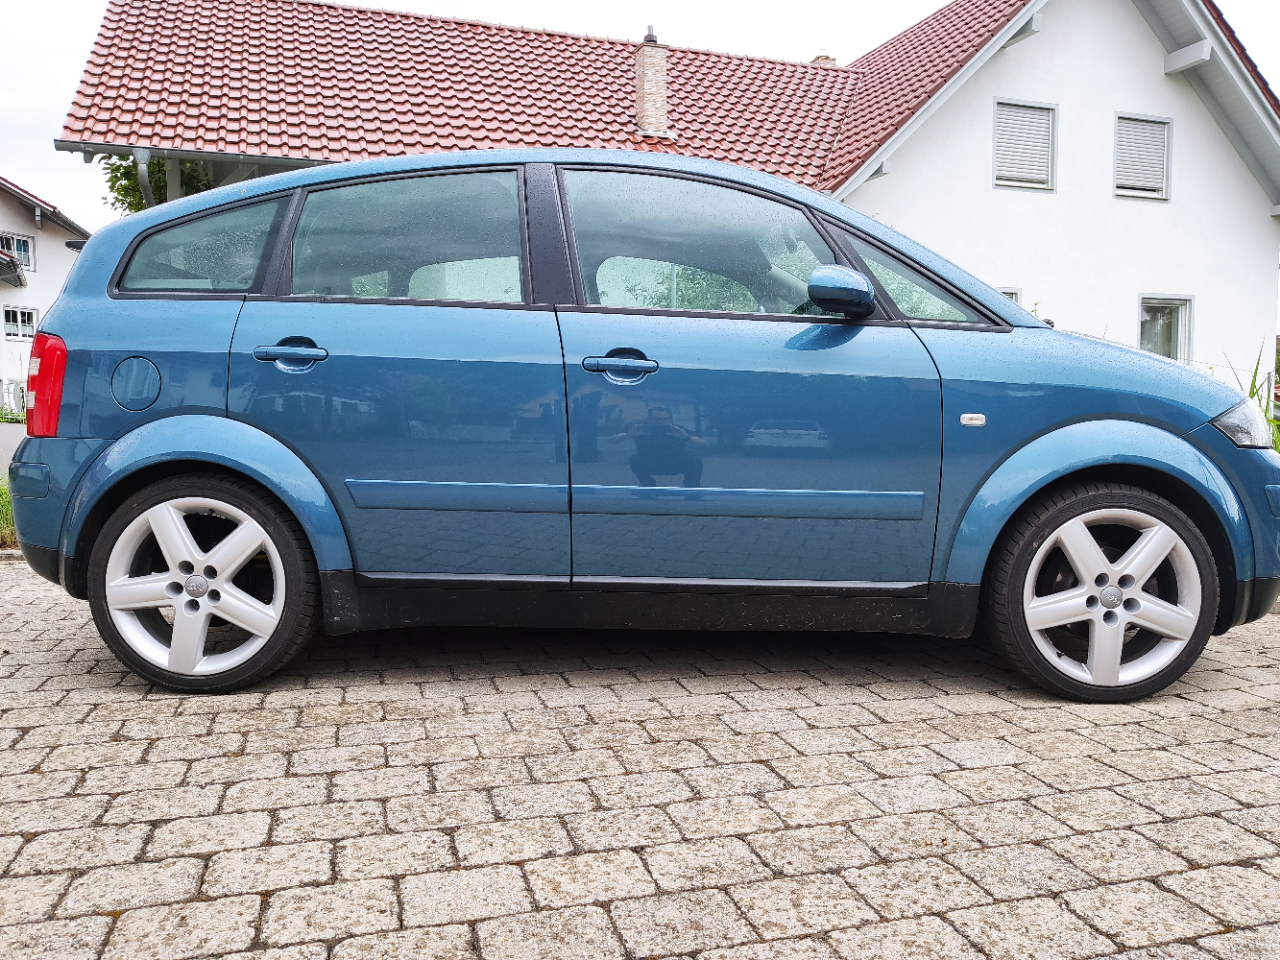 Brauche Hilfe beim Wechseln der Domlager - Seite 2 - Fahrwerk, Reifen und  Felgen - Audi A2 Club Deutschland